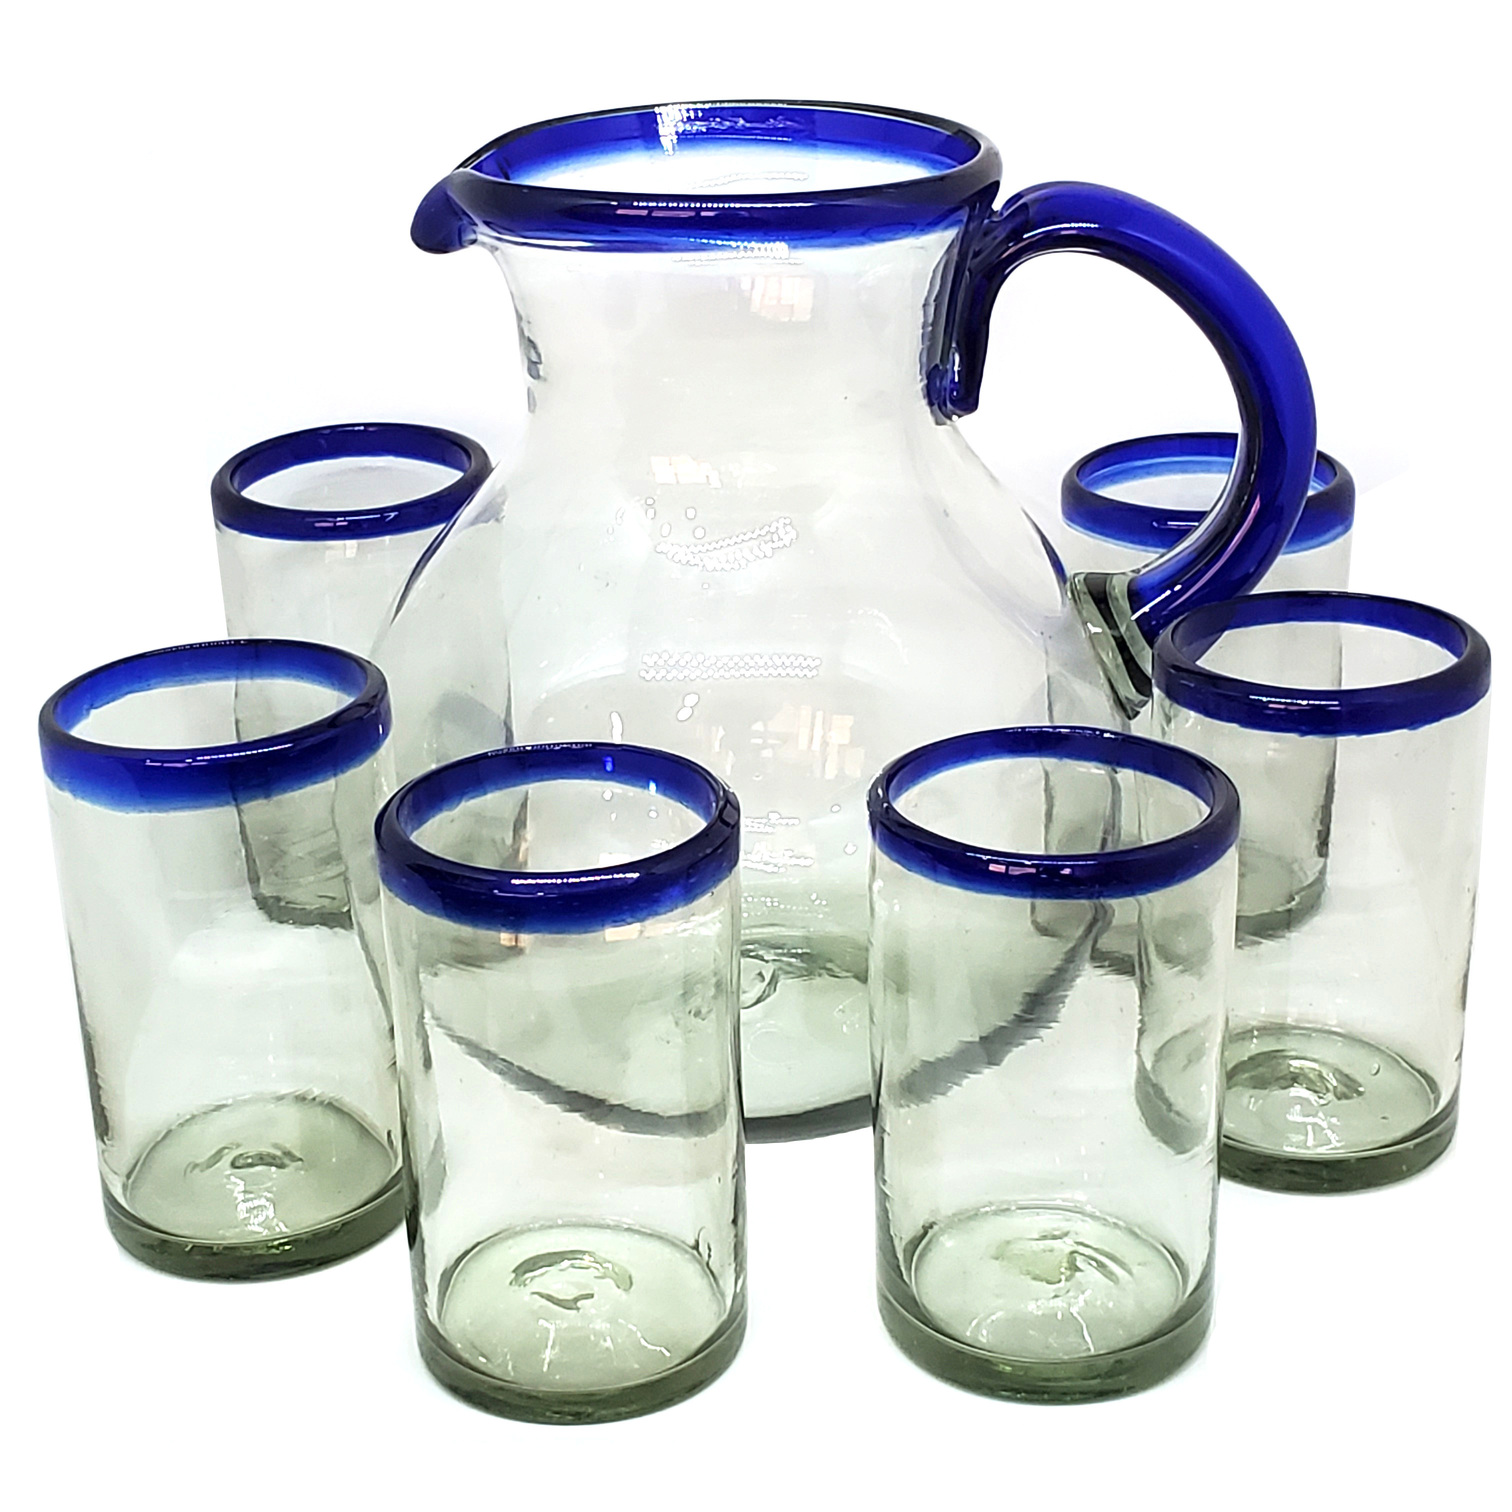 Juego de jarra y 6 vasos grandes con borde azul cobalto, 120 oz, Vidrio Reciclado, Libre de Plomo y Toxinas